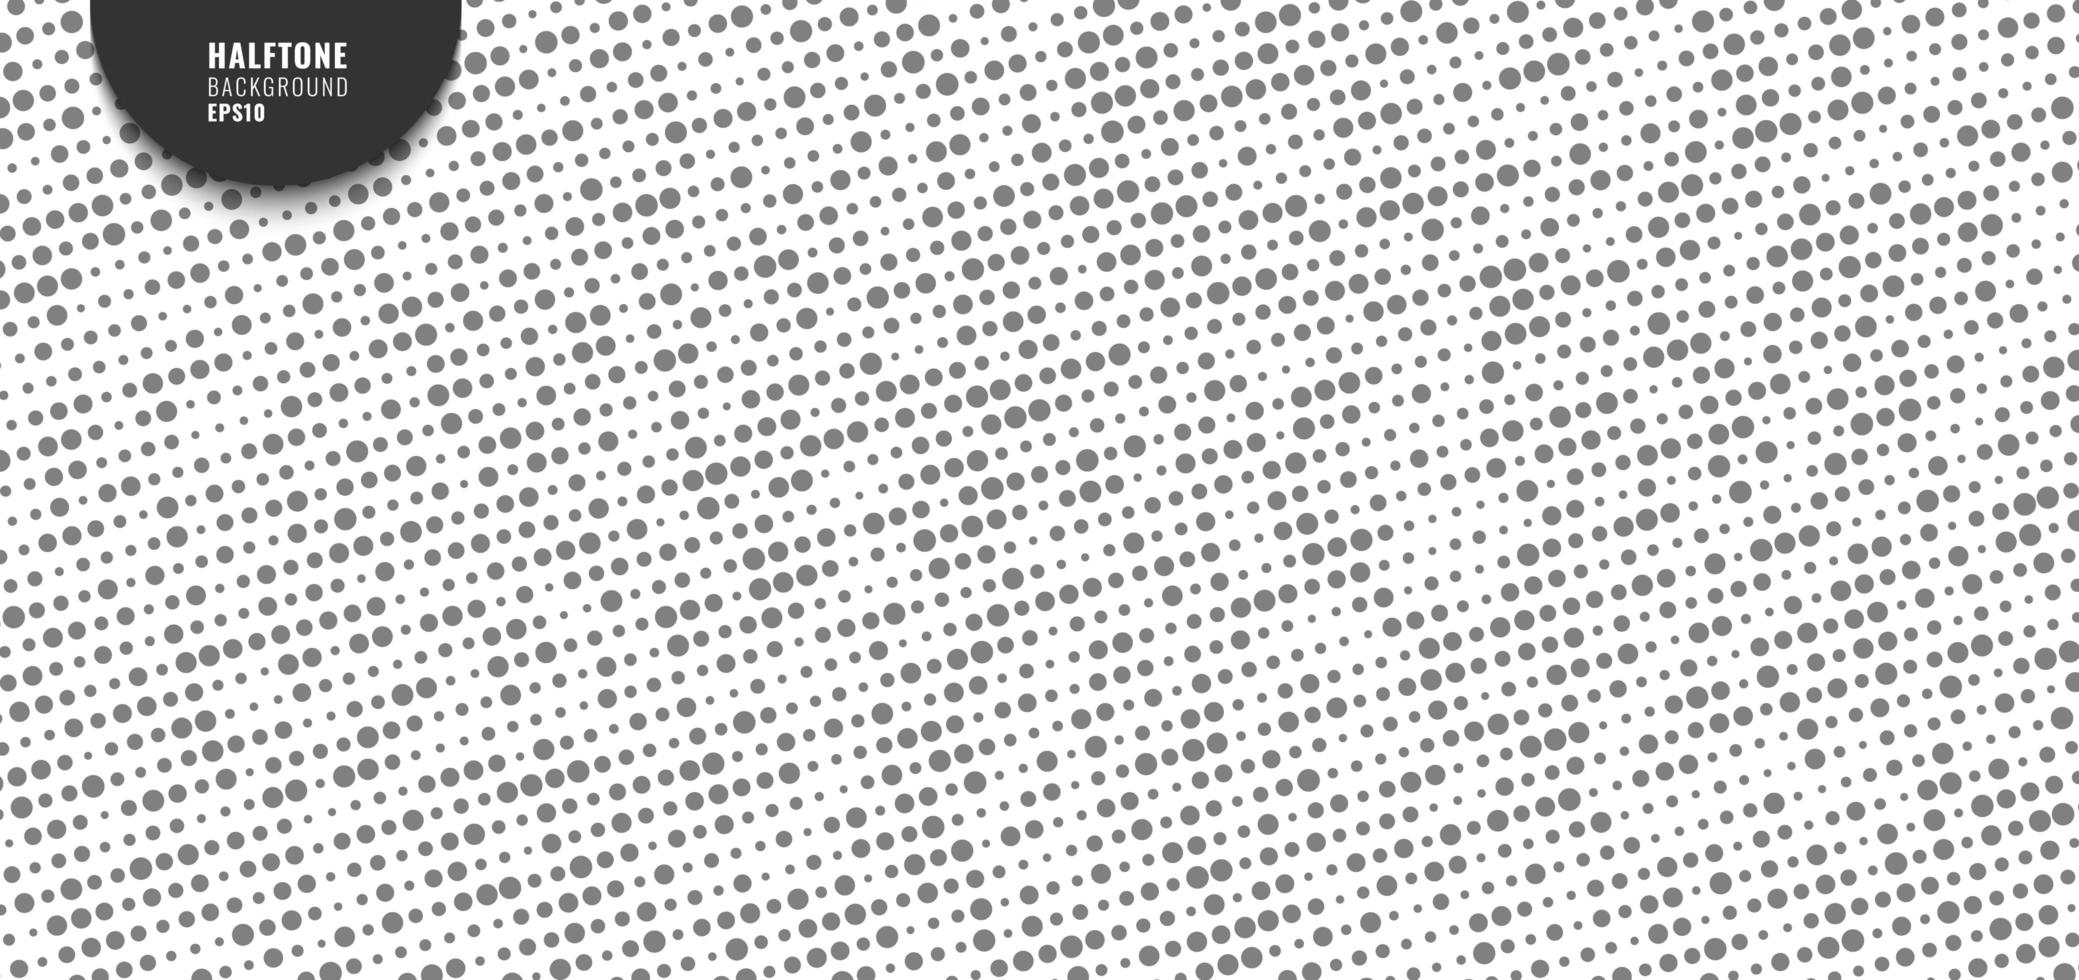 abstrakt enkelt grått slumpmässigt prickat mönster vektor